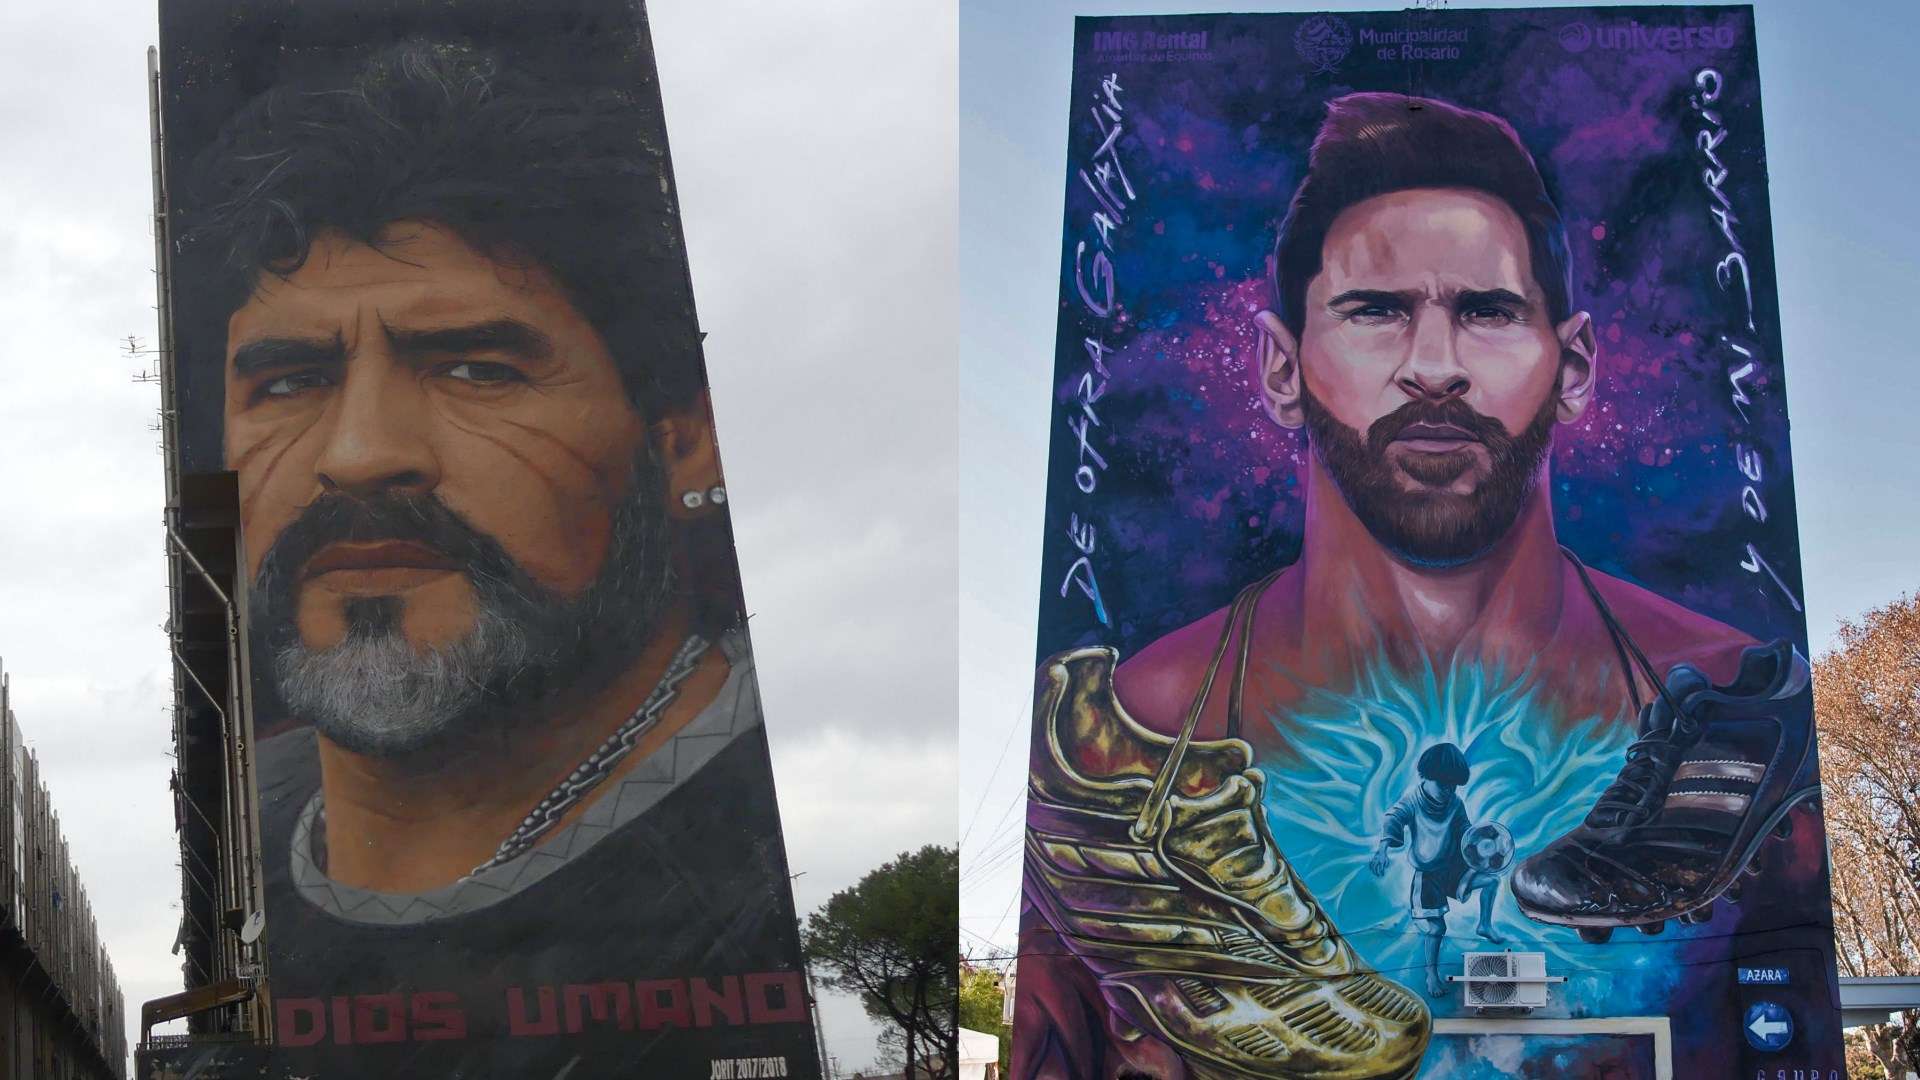 Diego Maradona Lionel Messi murals 